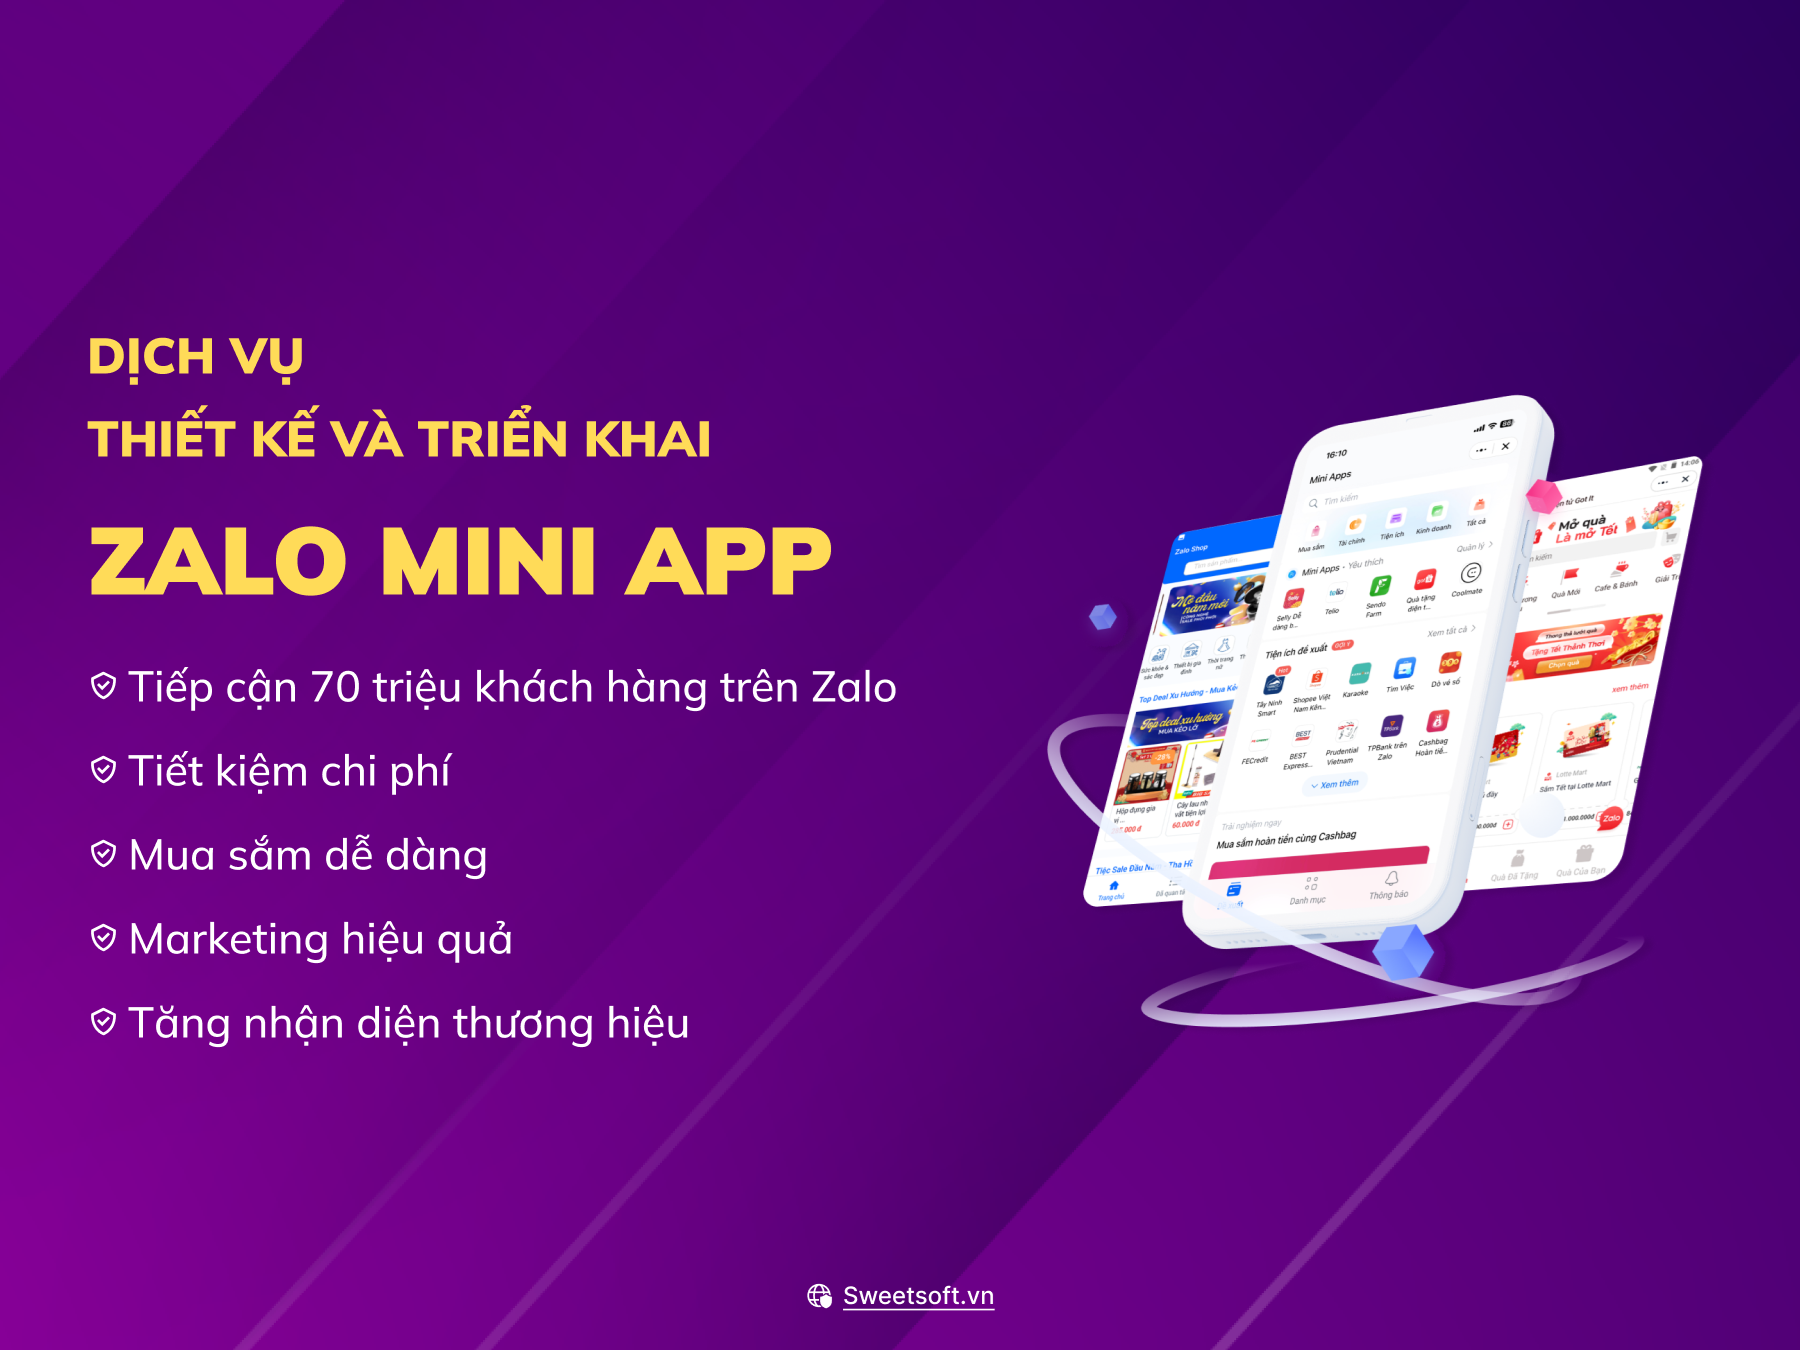 Dịch vụ thiết kế Zalo Mini App - Hỗ trợ kinh doanh hiệu quả